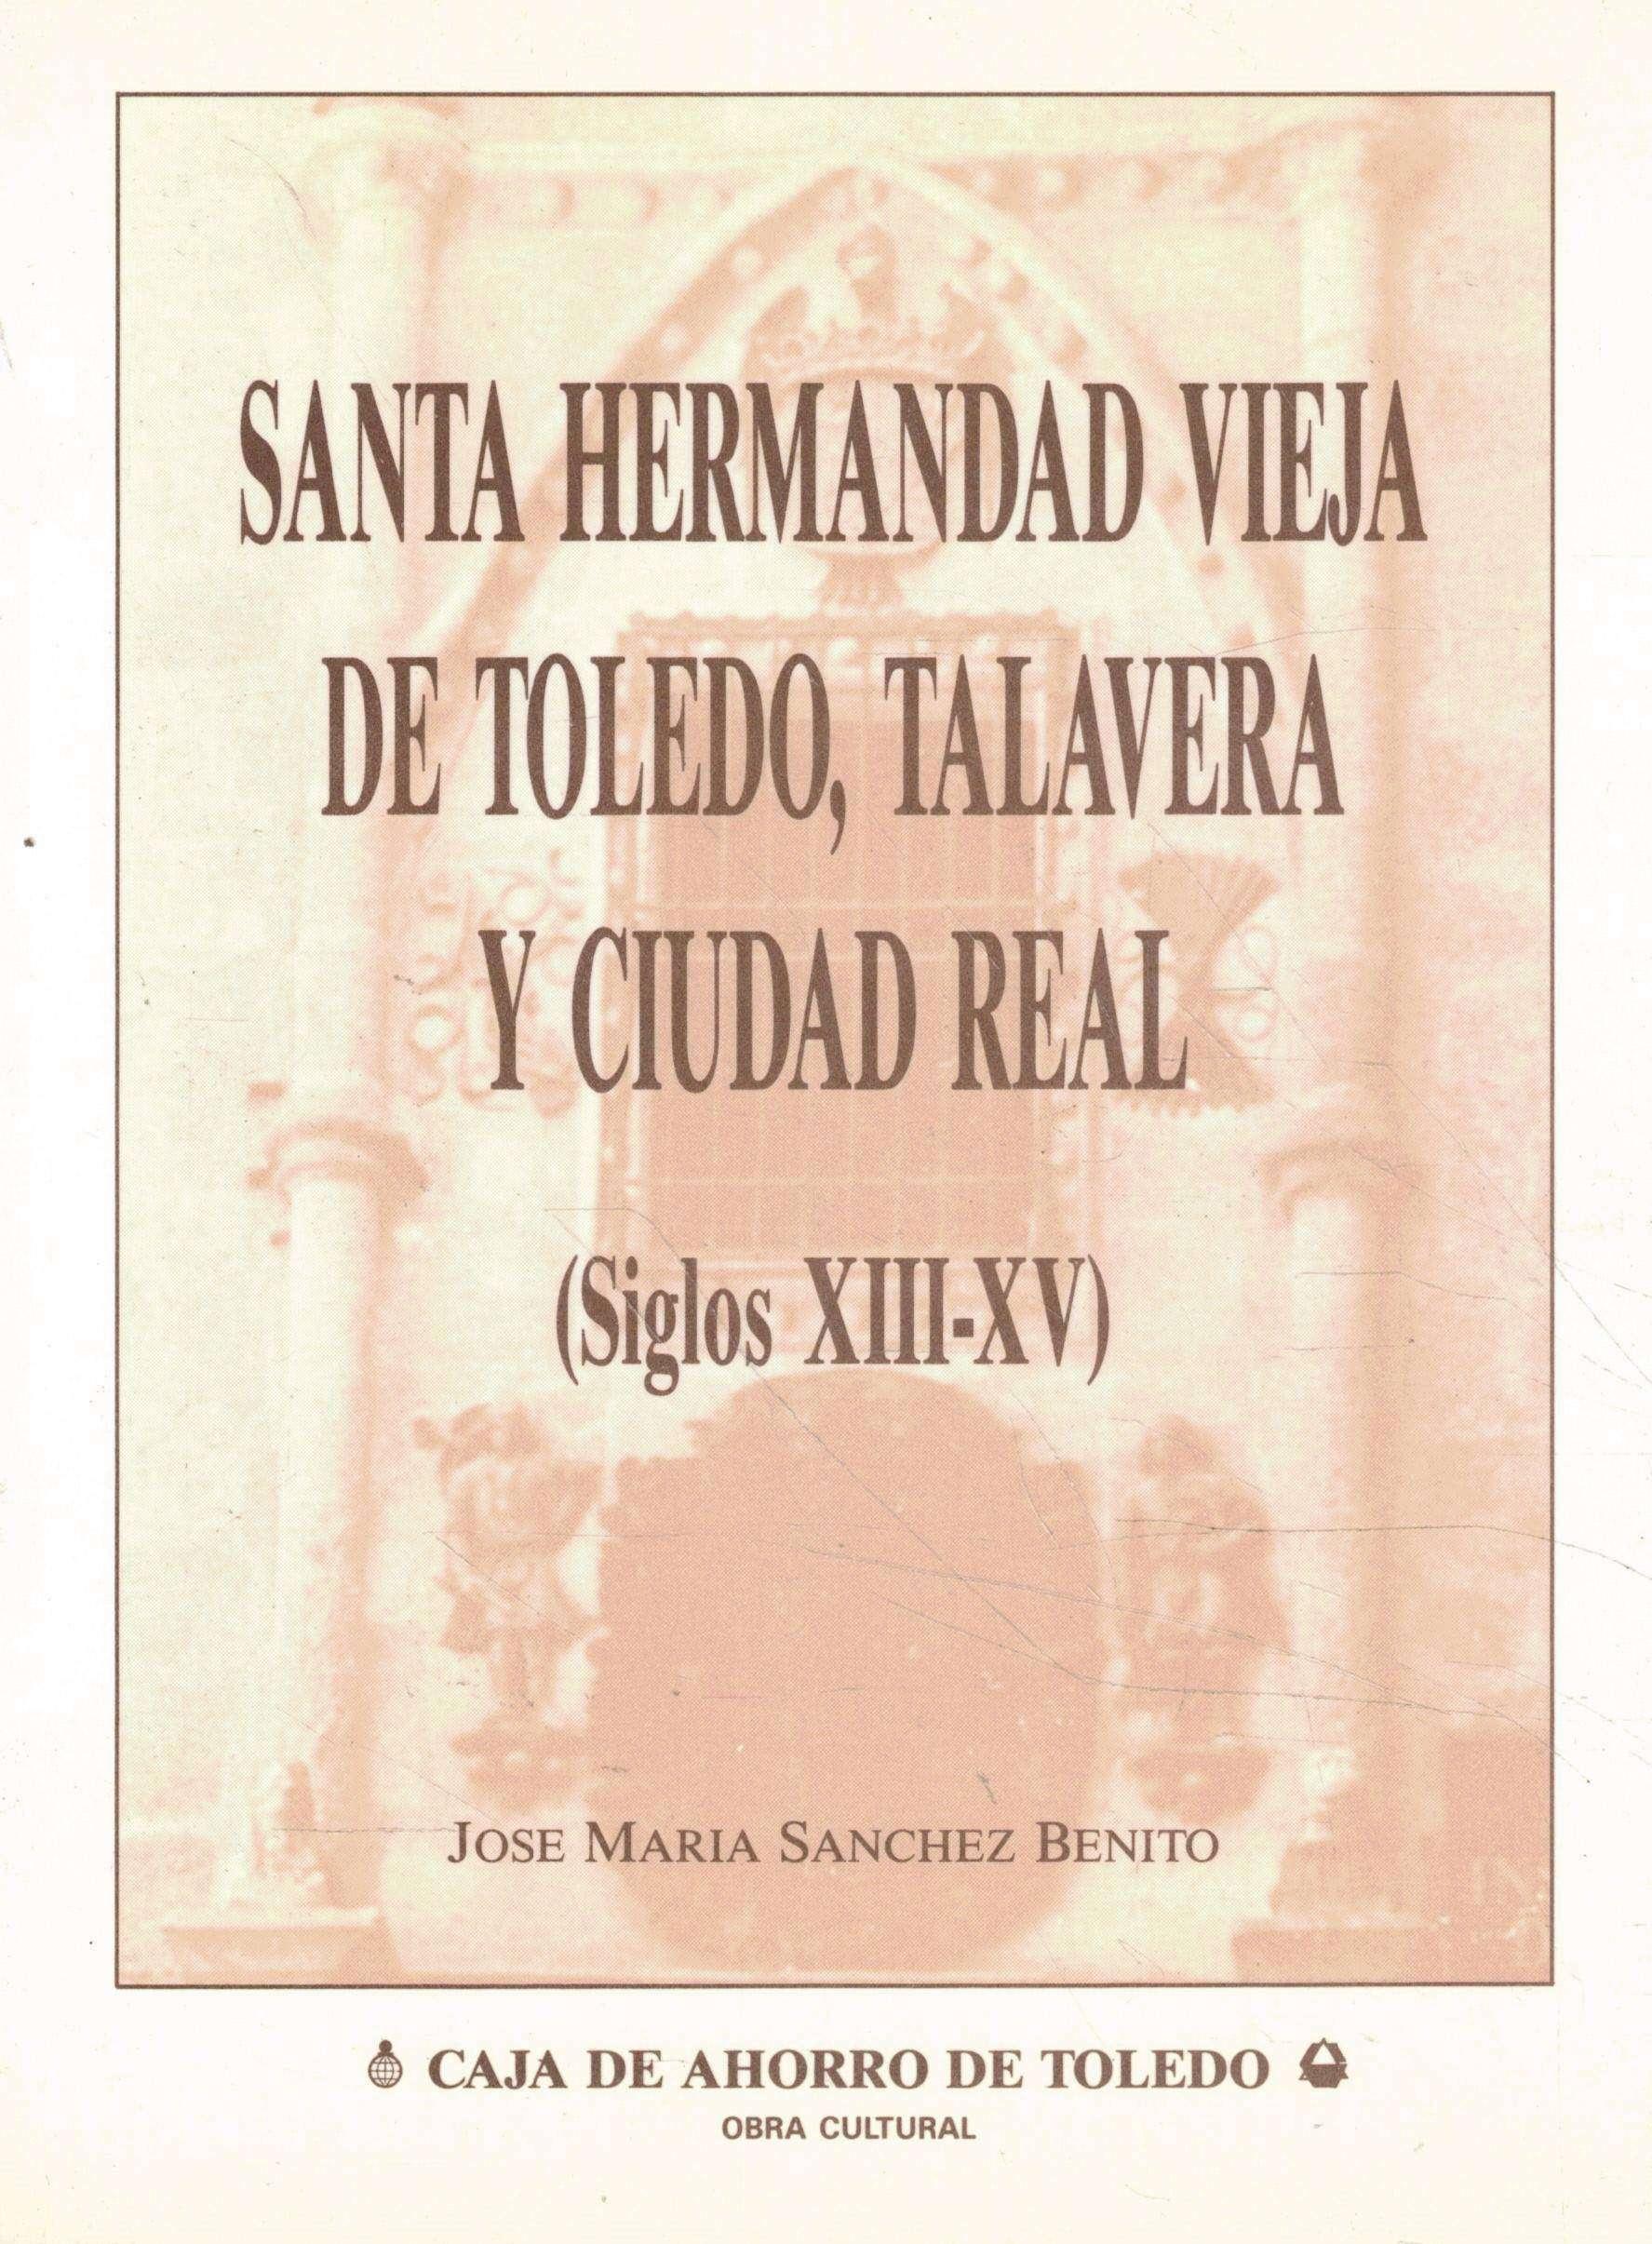 Santa Hermanda Vieja de Toledo, Talavera y Ciudad Real "(Siglo XIII-XV)". 